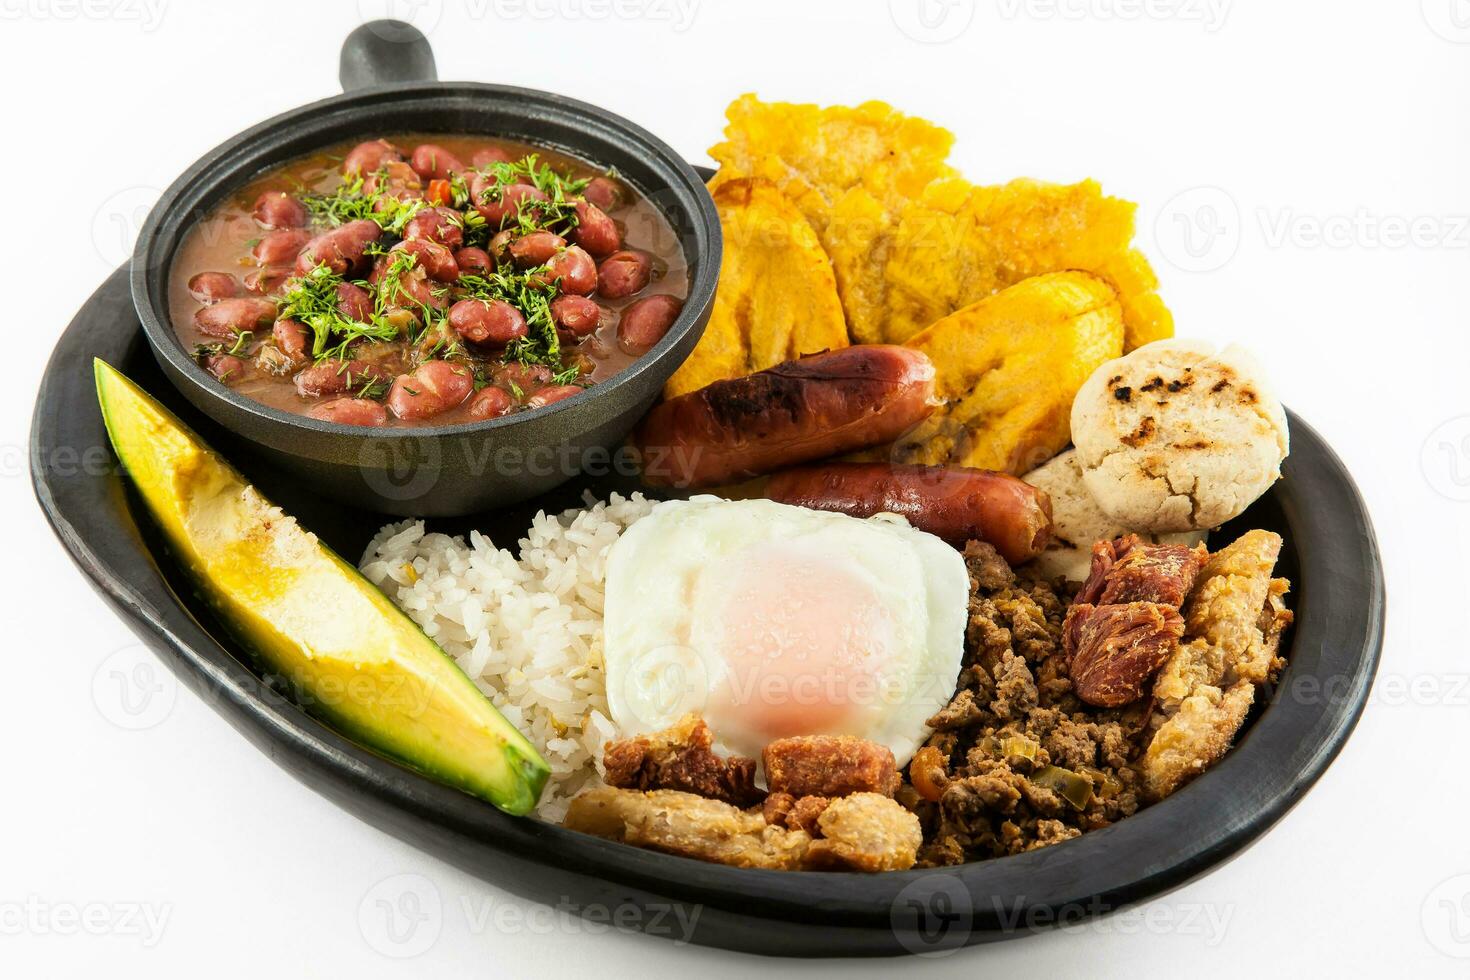 tradicional colombiano prato chamado banda paisa uma prato típica do Medellin este inclui carne, feijões, ovo e bananeira foto